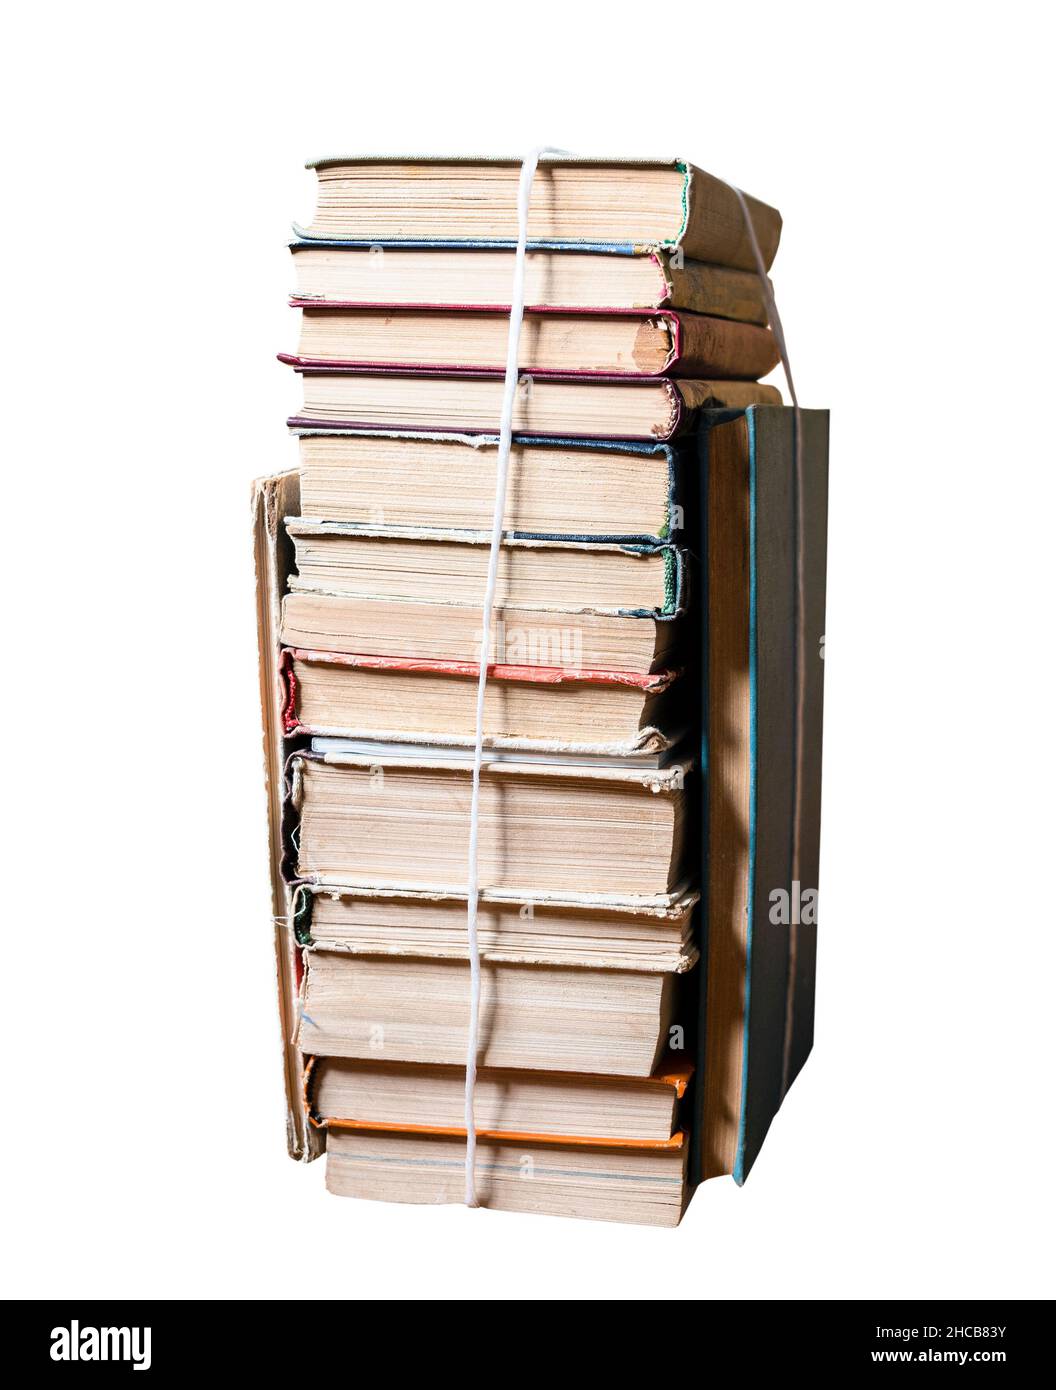 Stapel von gebrauchten Büchern, die mit PackThread isoliert auf weißem Hintergrund gebunden sind Stockfoto